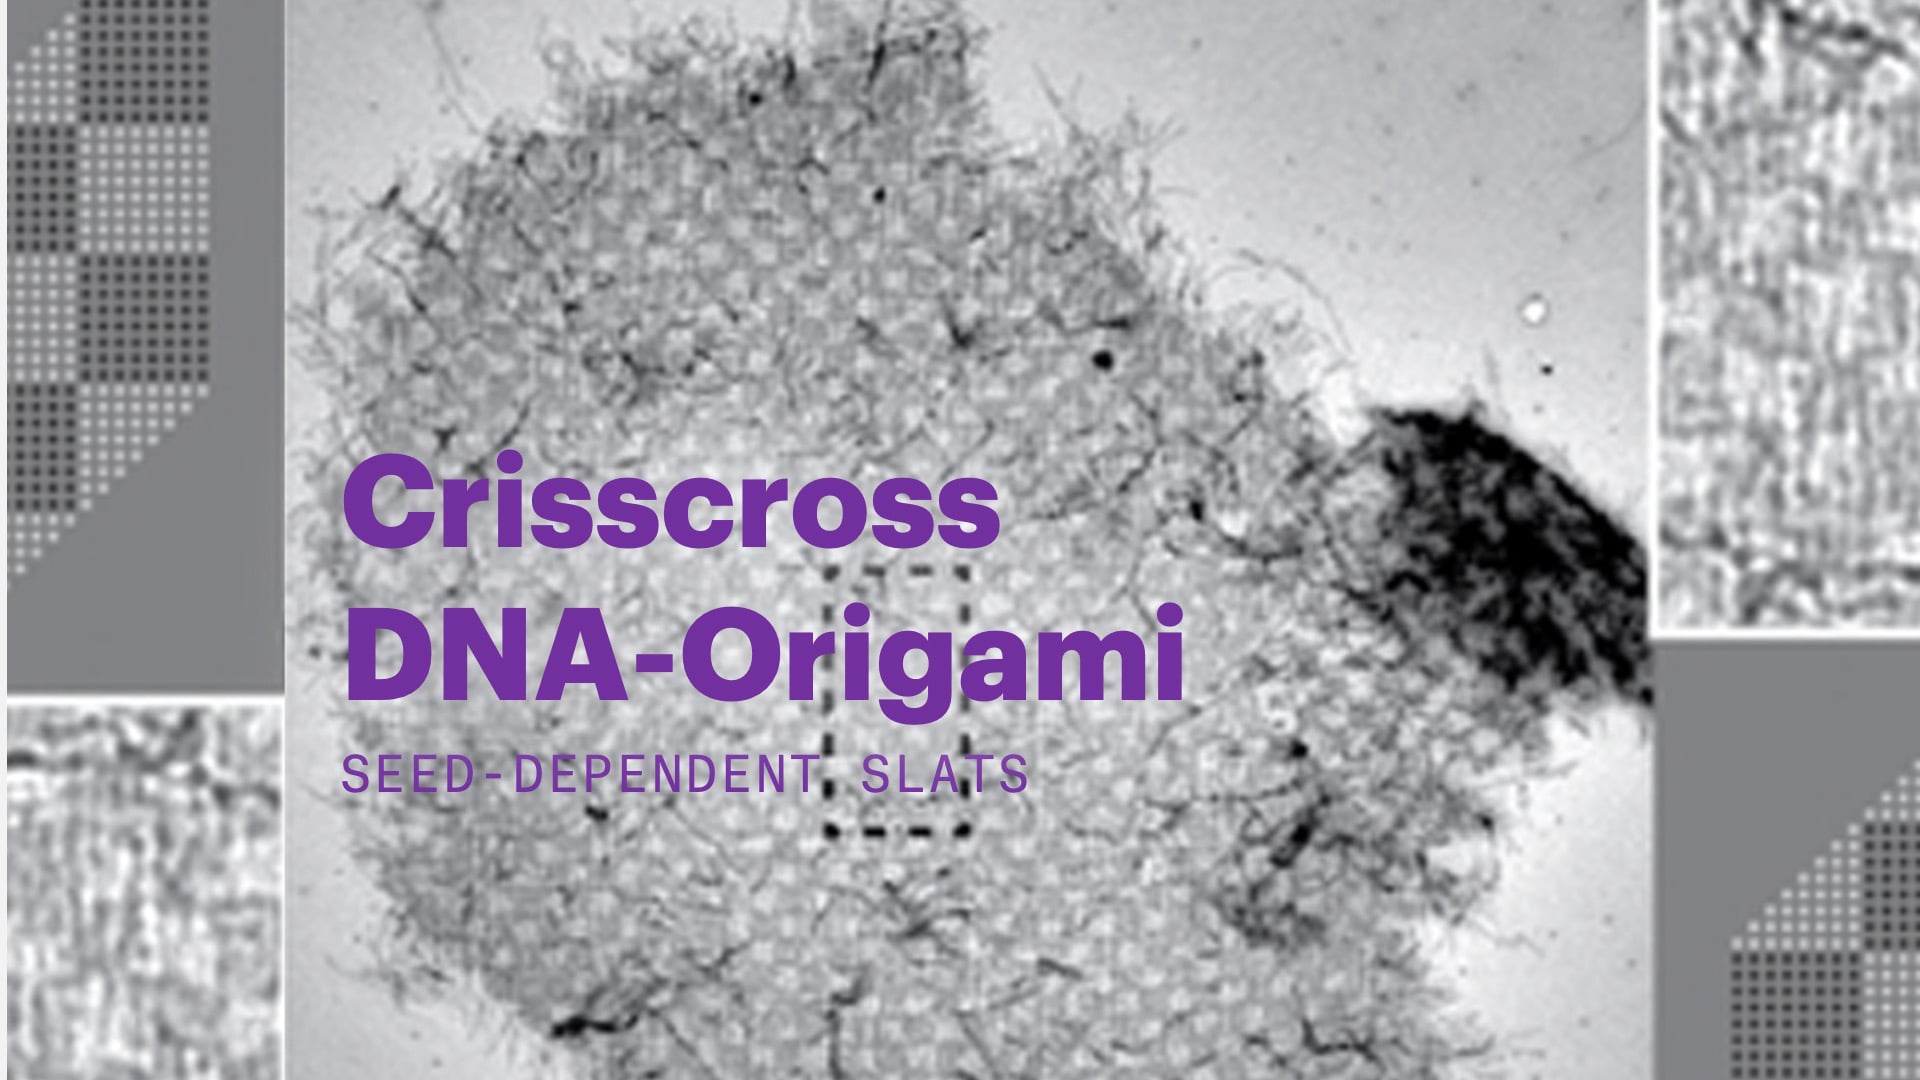 Listones de origami de ADN entrecruzado dependiente de la semilla.mp4